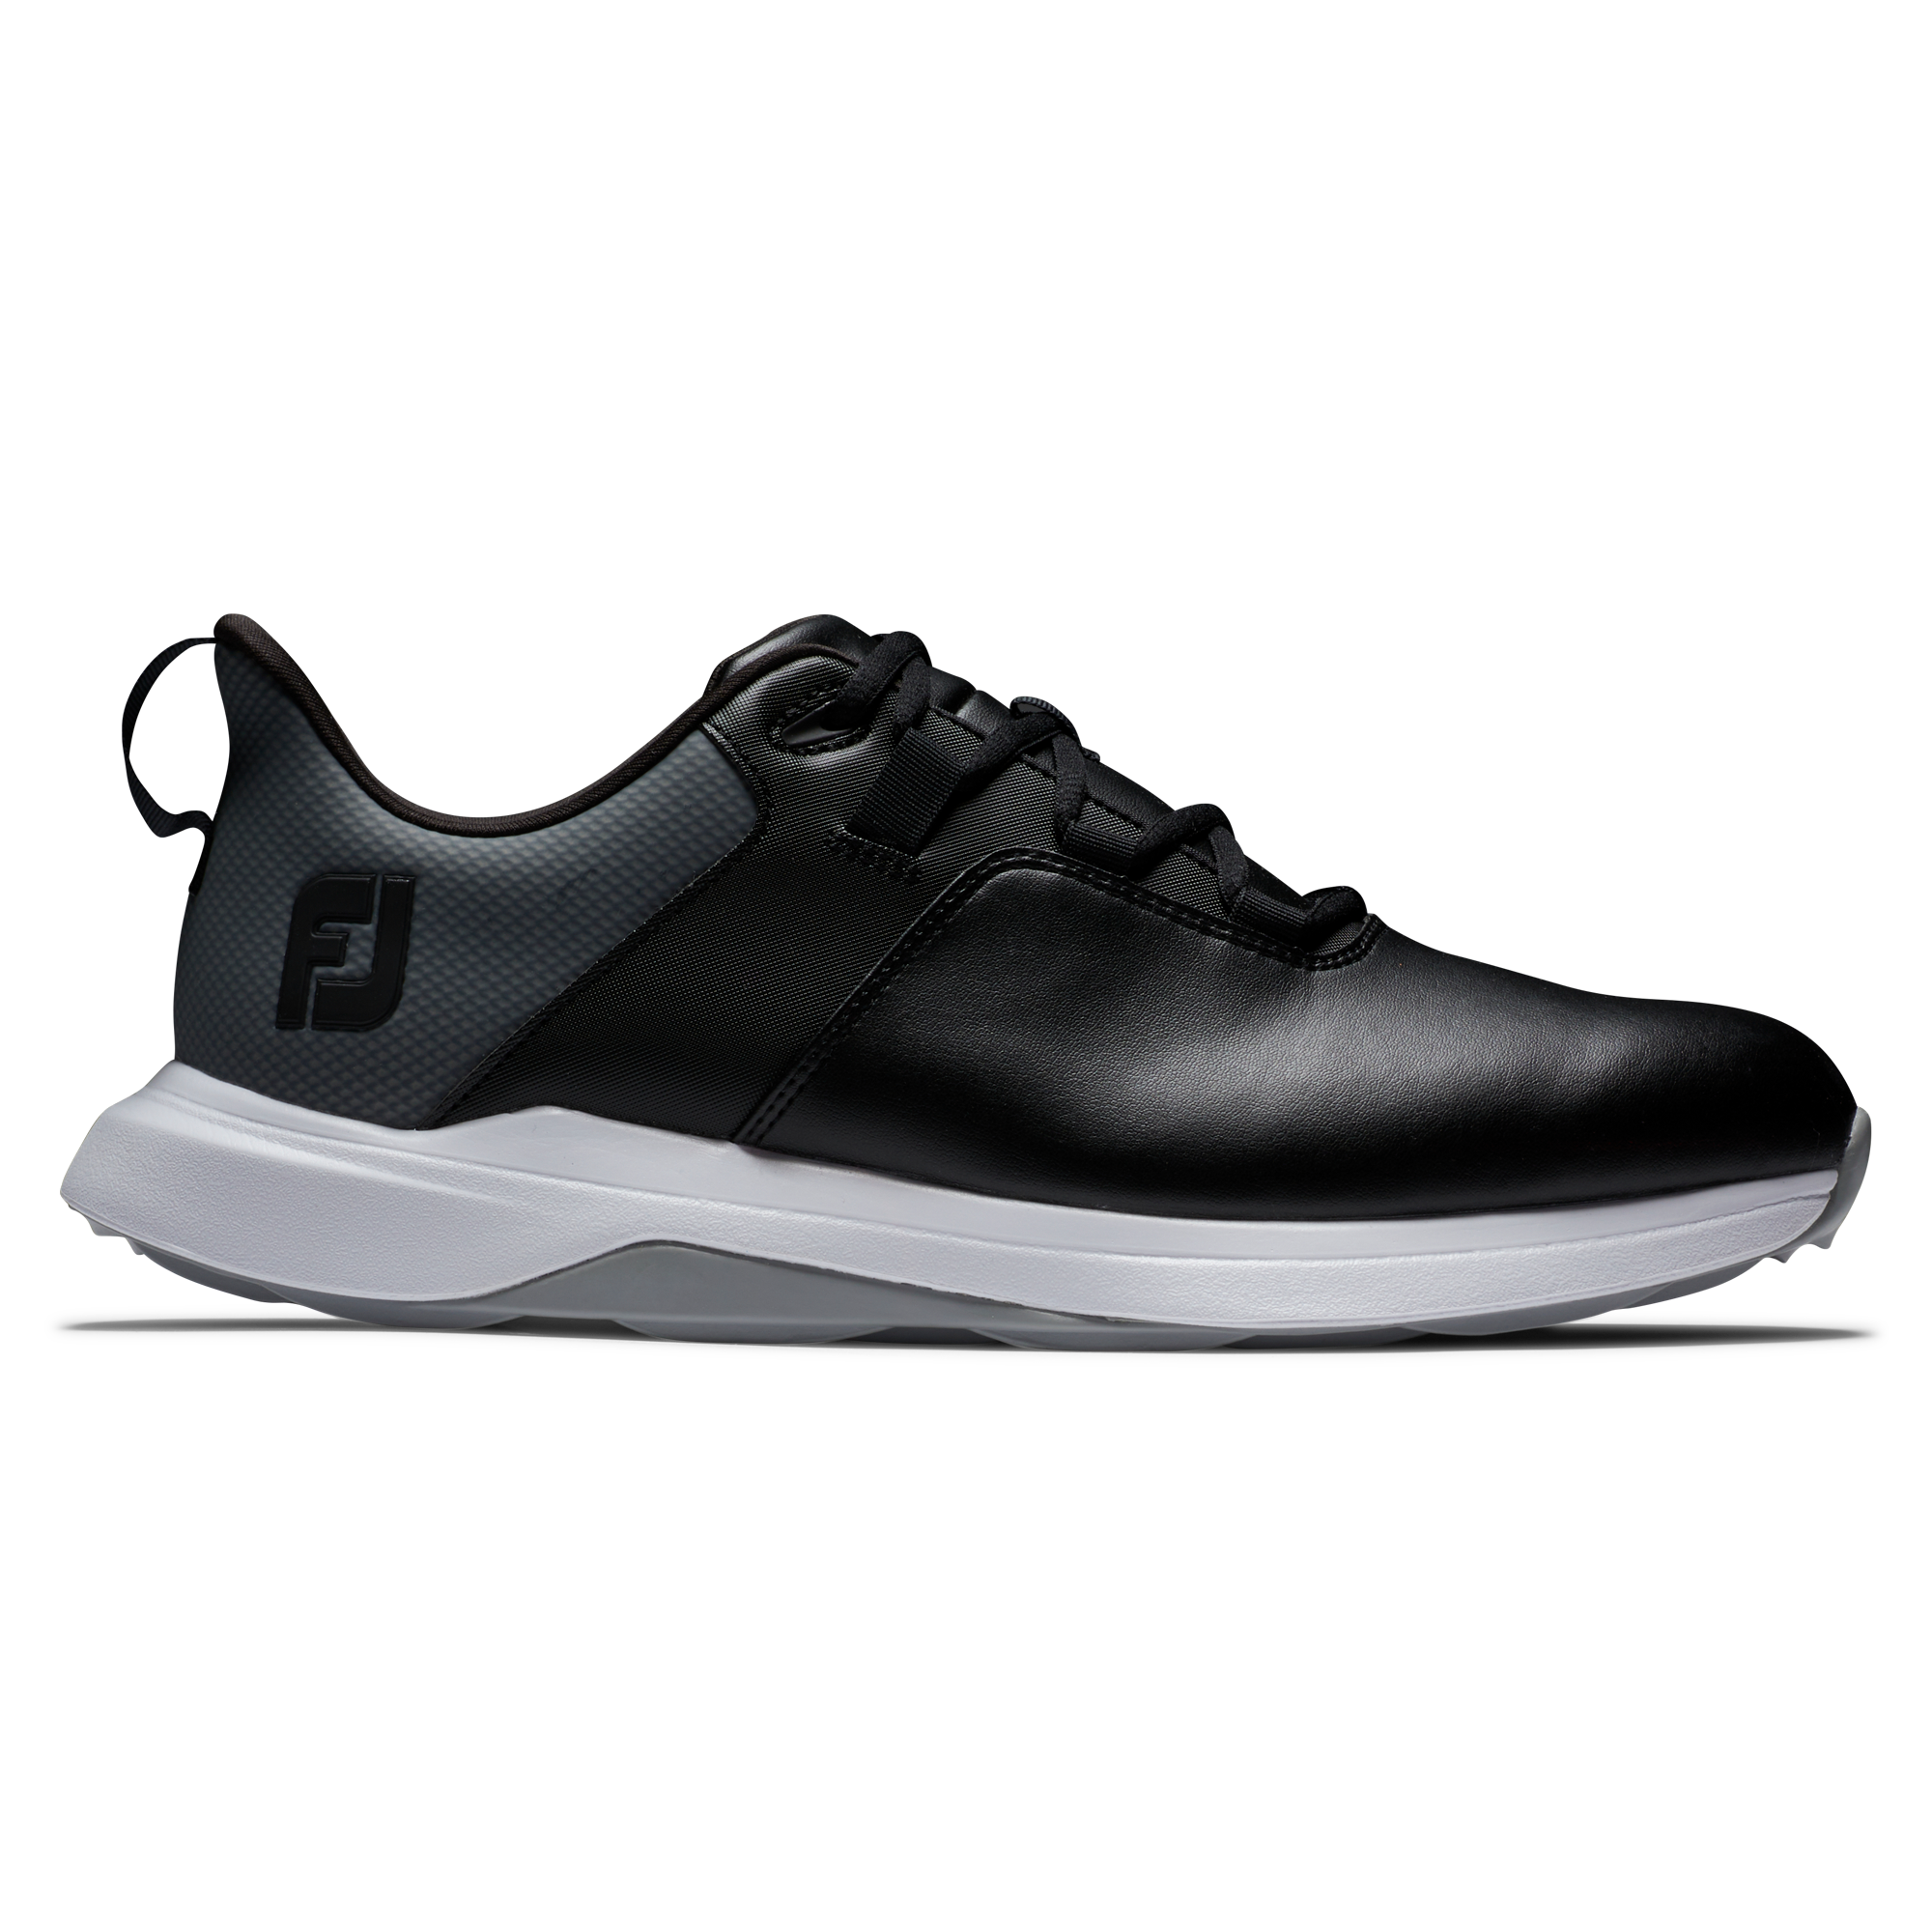 FootJoy ProLite pánské golfové boty, černé, vel. 11 UK